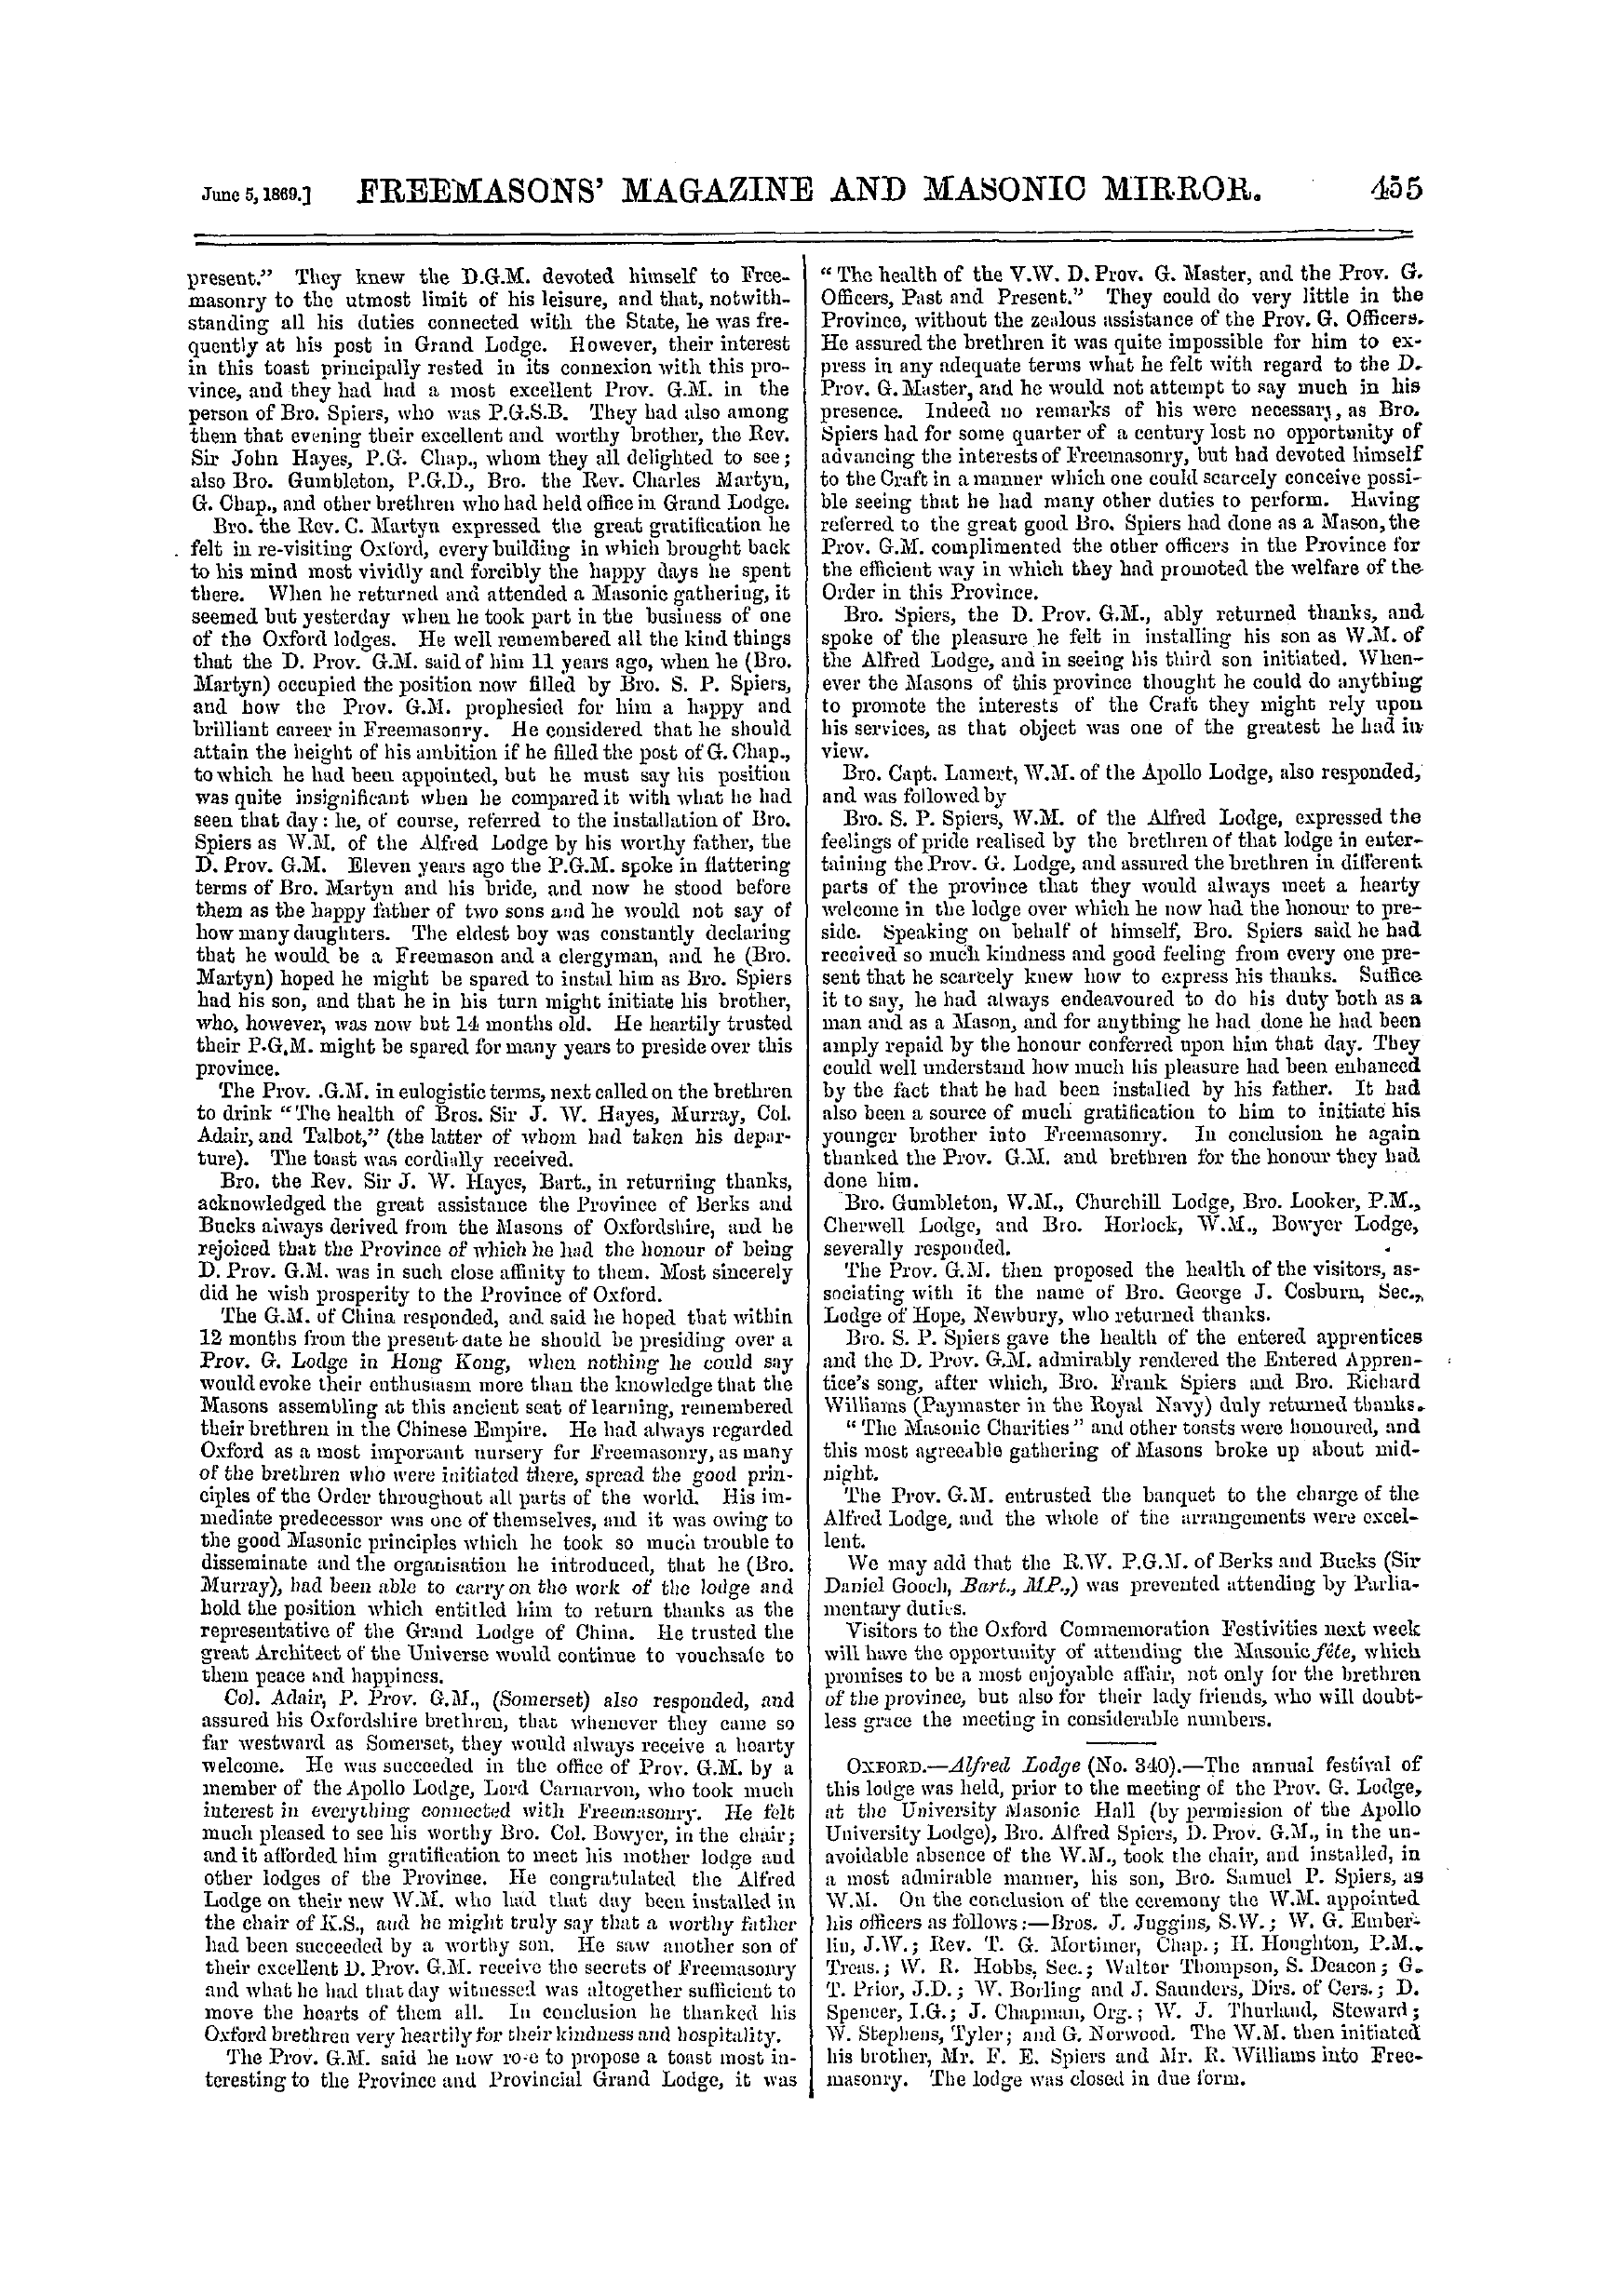 The Freemasons' Monthly Magazine: 1869-06-05: 15